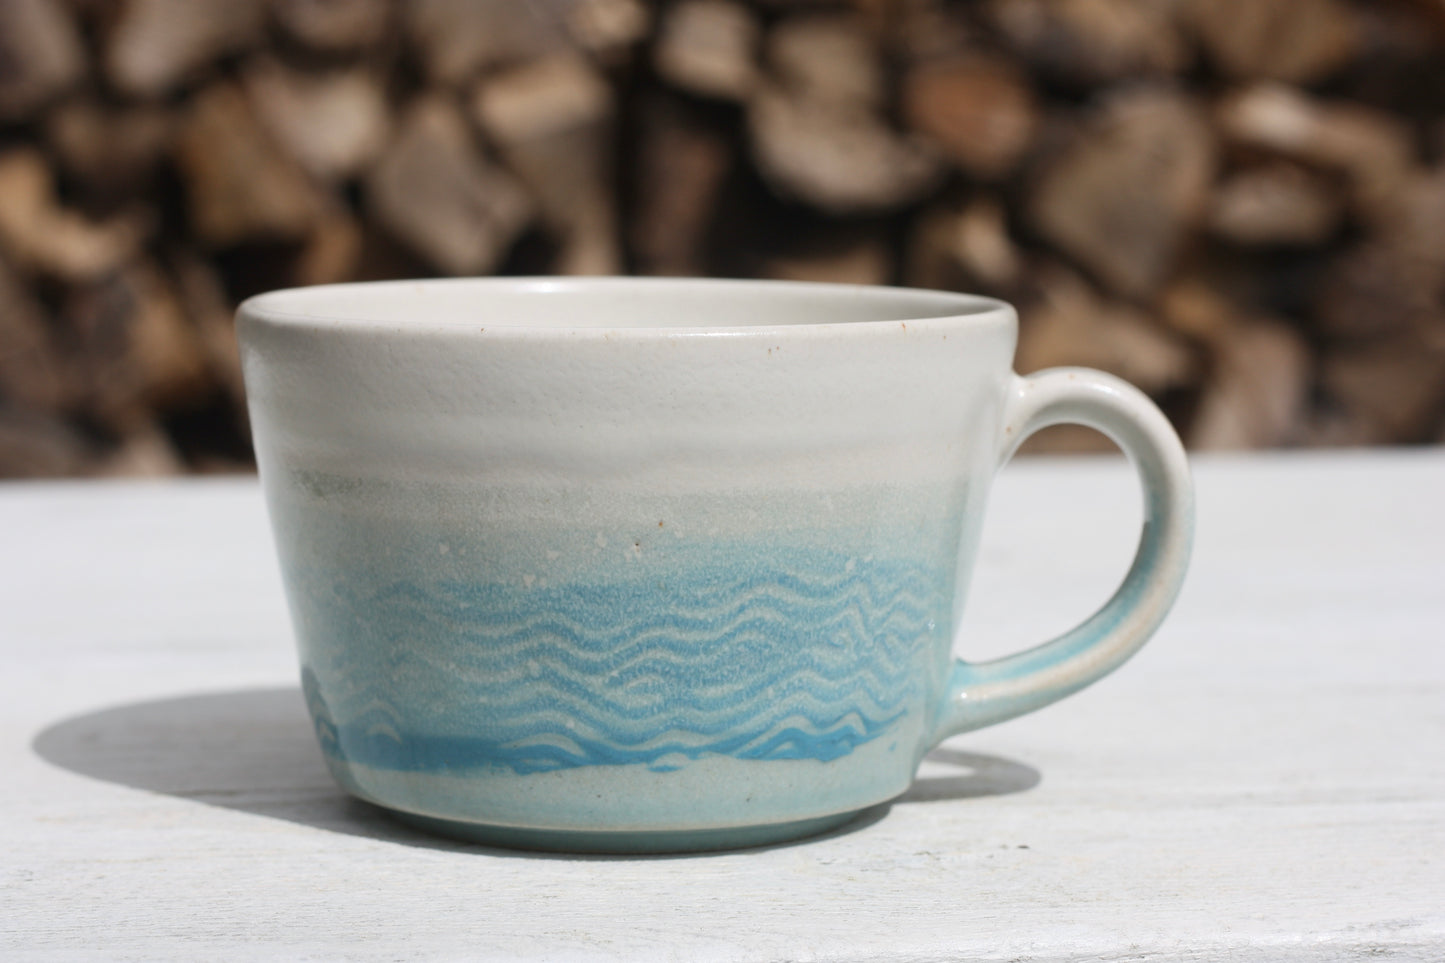 Cornish waves glazed Mug 14oz 400ml Medium Mug in Blue and White Glaze